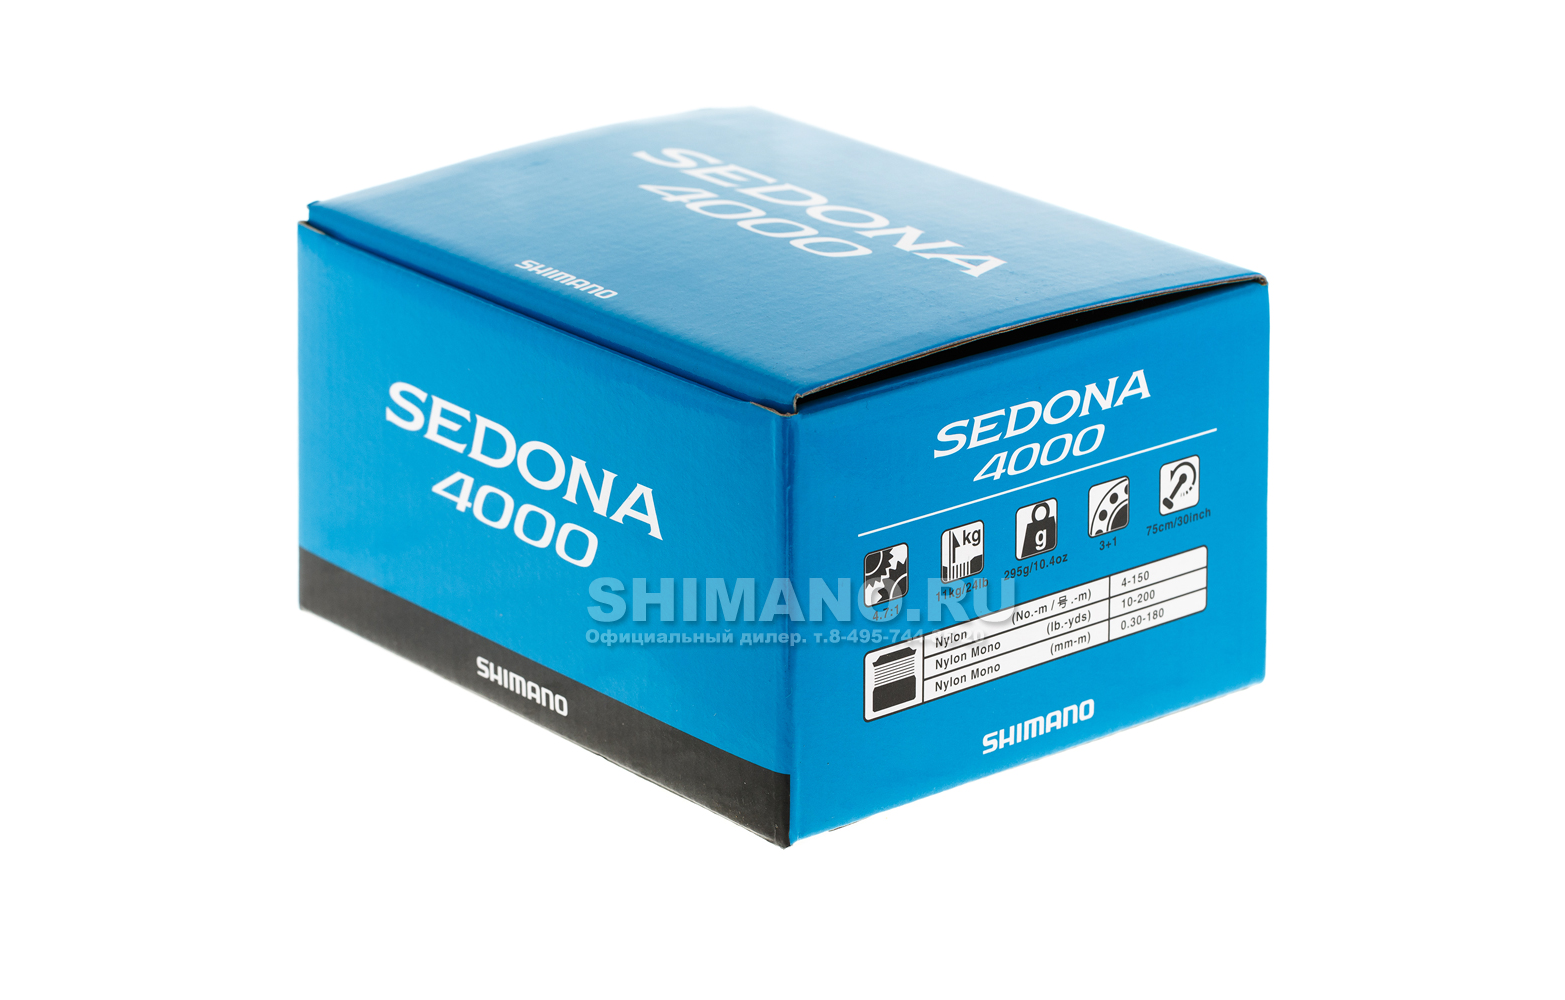 Купить Катушка Shimano Sedona 4000 FI в Москве в интернет-магазине